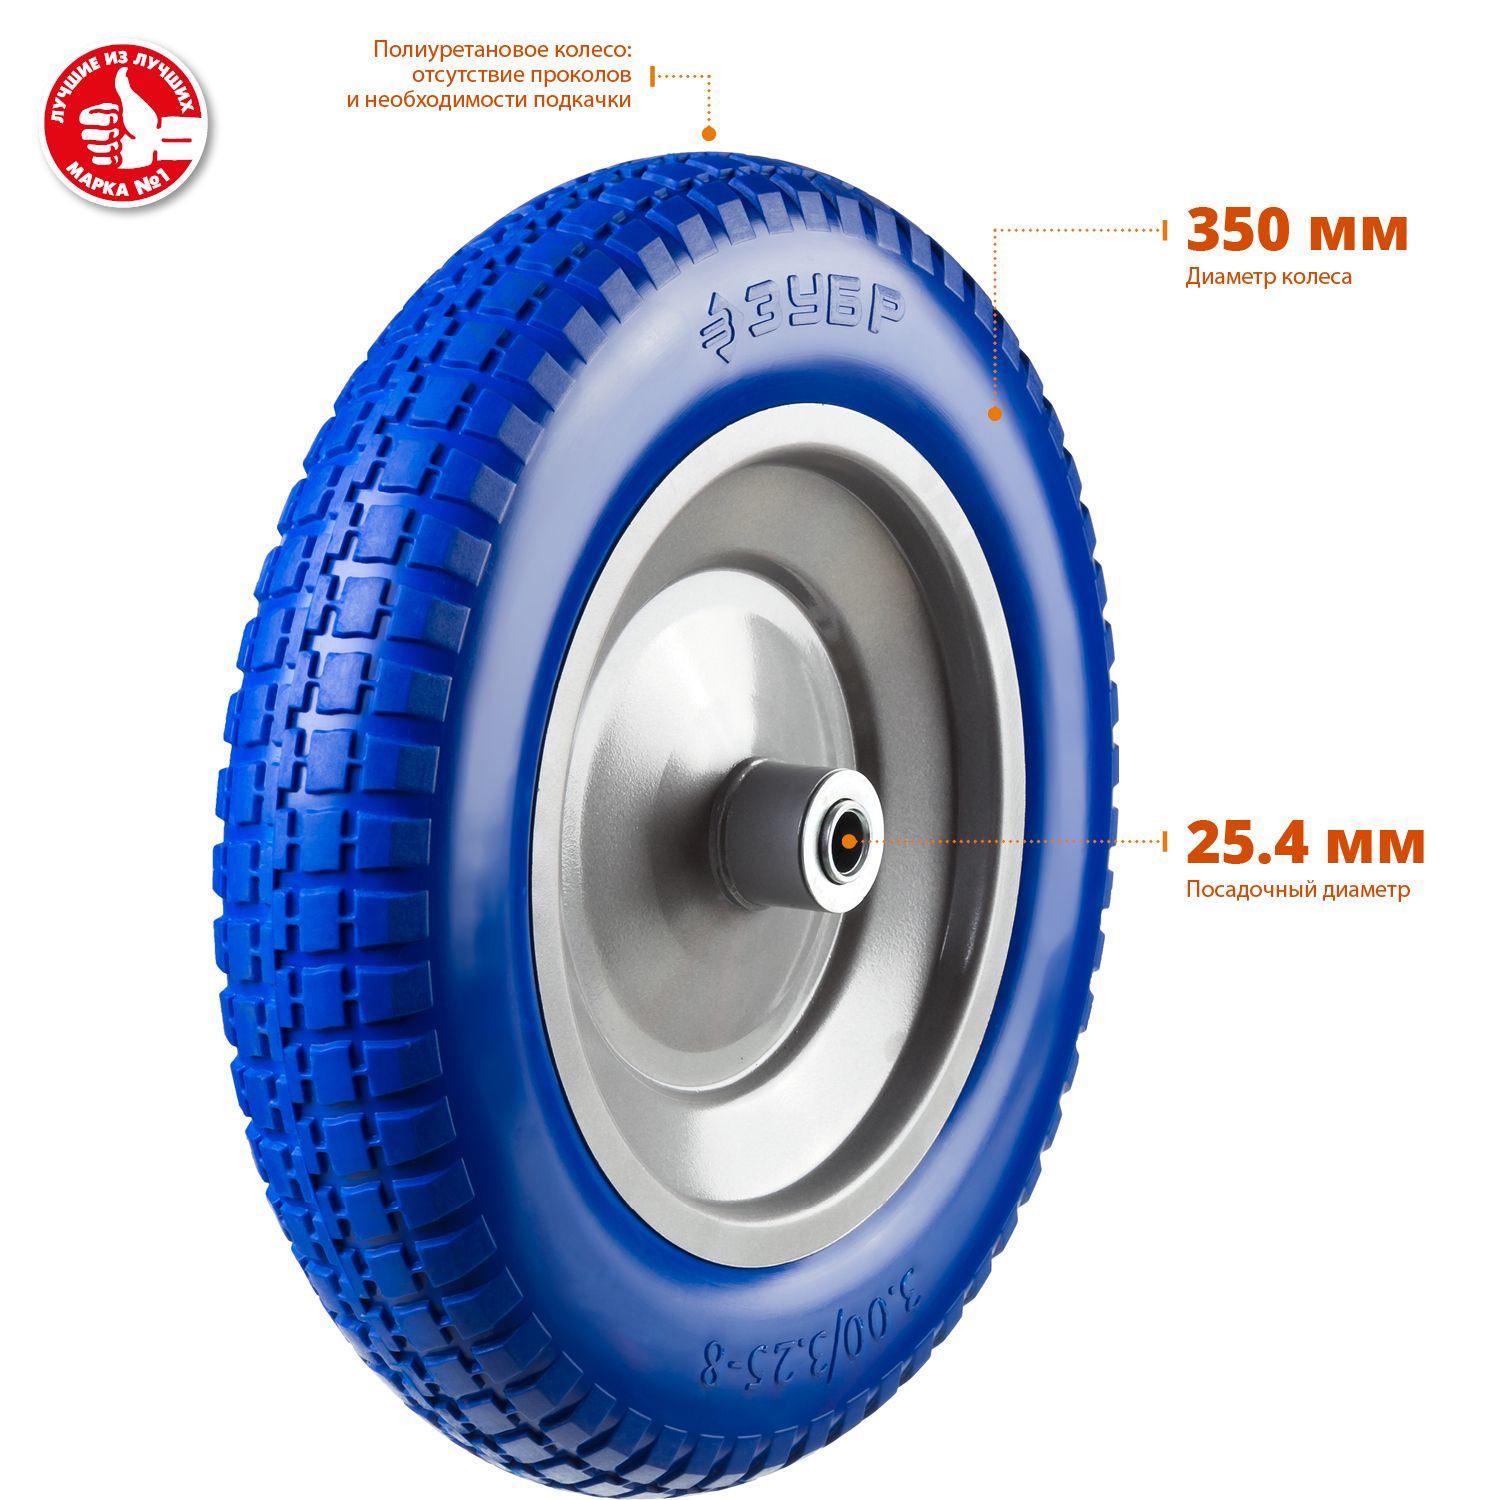 Полиуретановое колесо ЗУБР КПУ-3 350 мм для тачек (арт. 39914 39911) 399123 Зубр